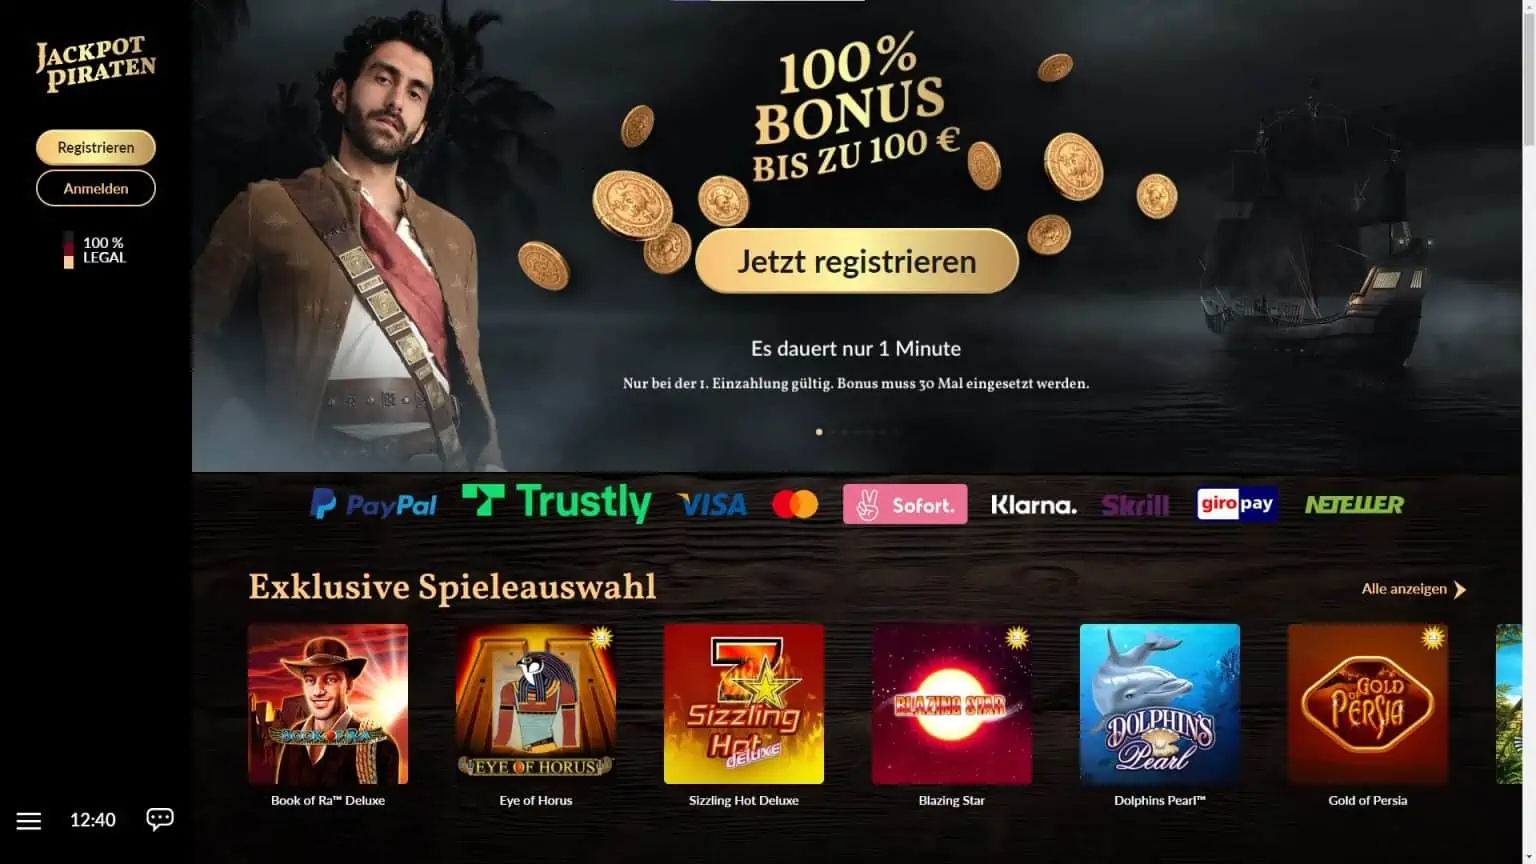 Casino Promotion: Freispiele ohne Einzahlung bei Jackpotpiraten